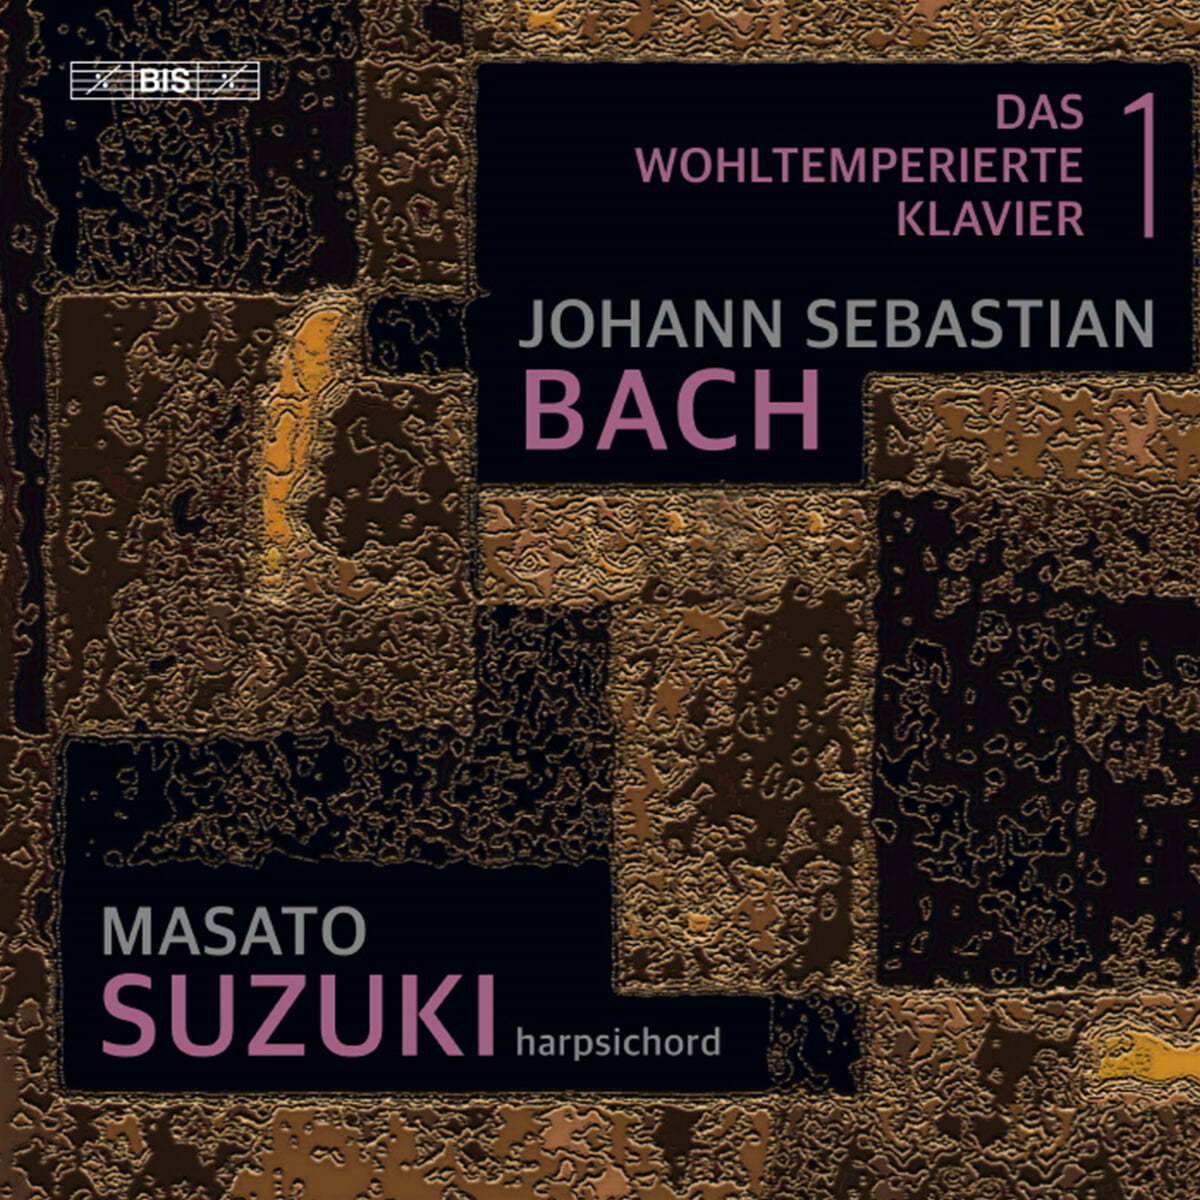 Masato Suzuki 바흐: 평균율 클라이버 곡집 제 1권 (Bach: The Well-Tempered Clavier, Book 1 BWV846-869)